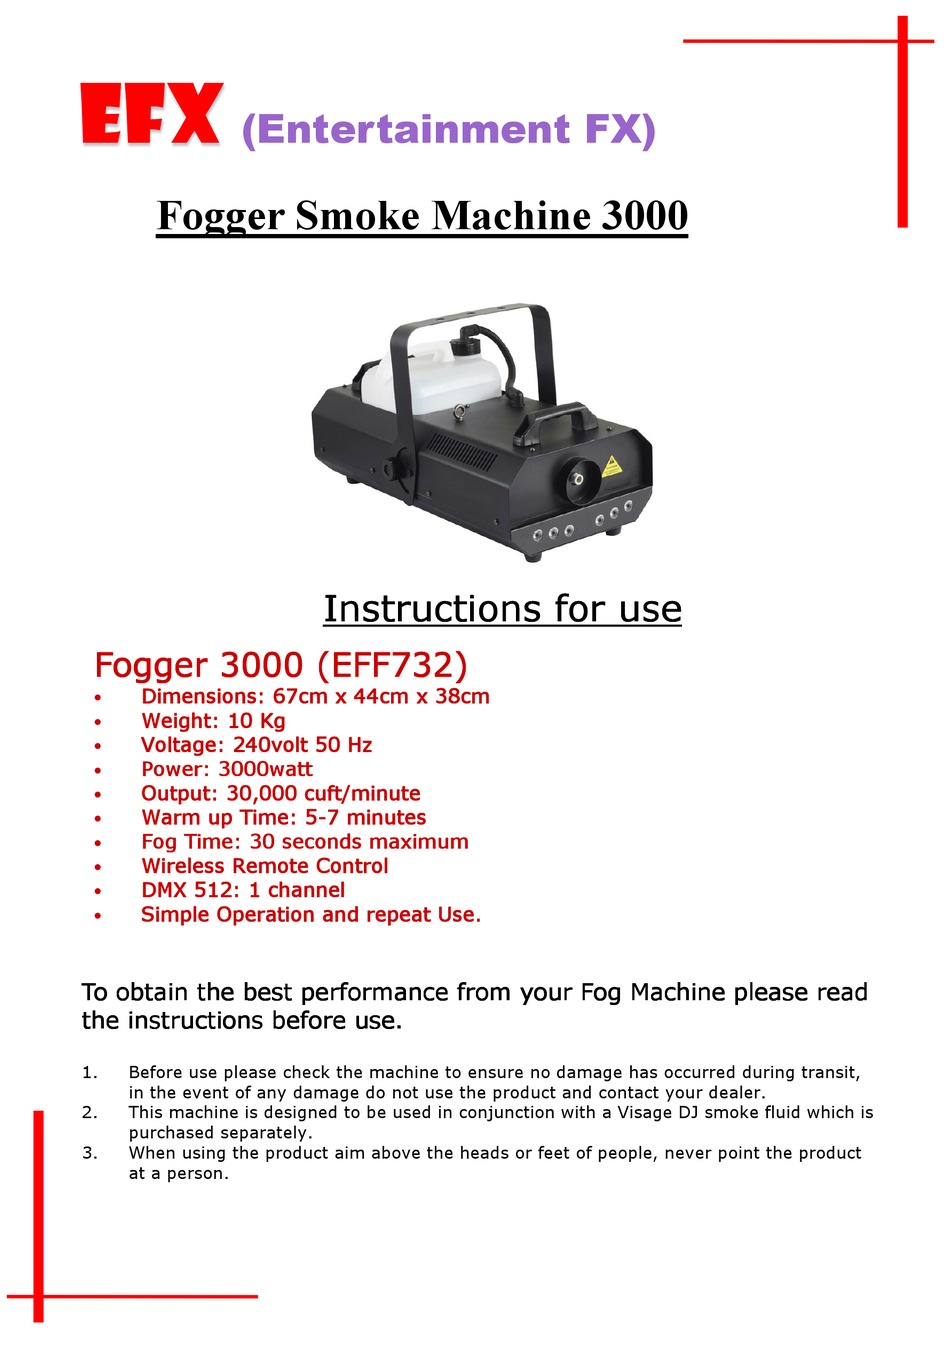 Fogger-3000 cs go skin download the new for apple